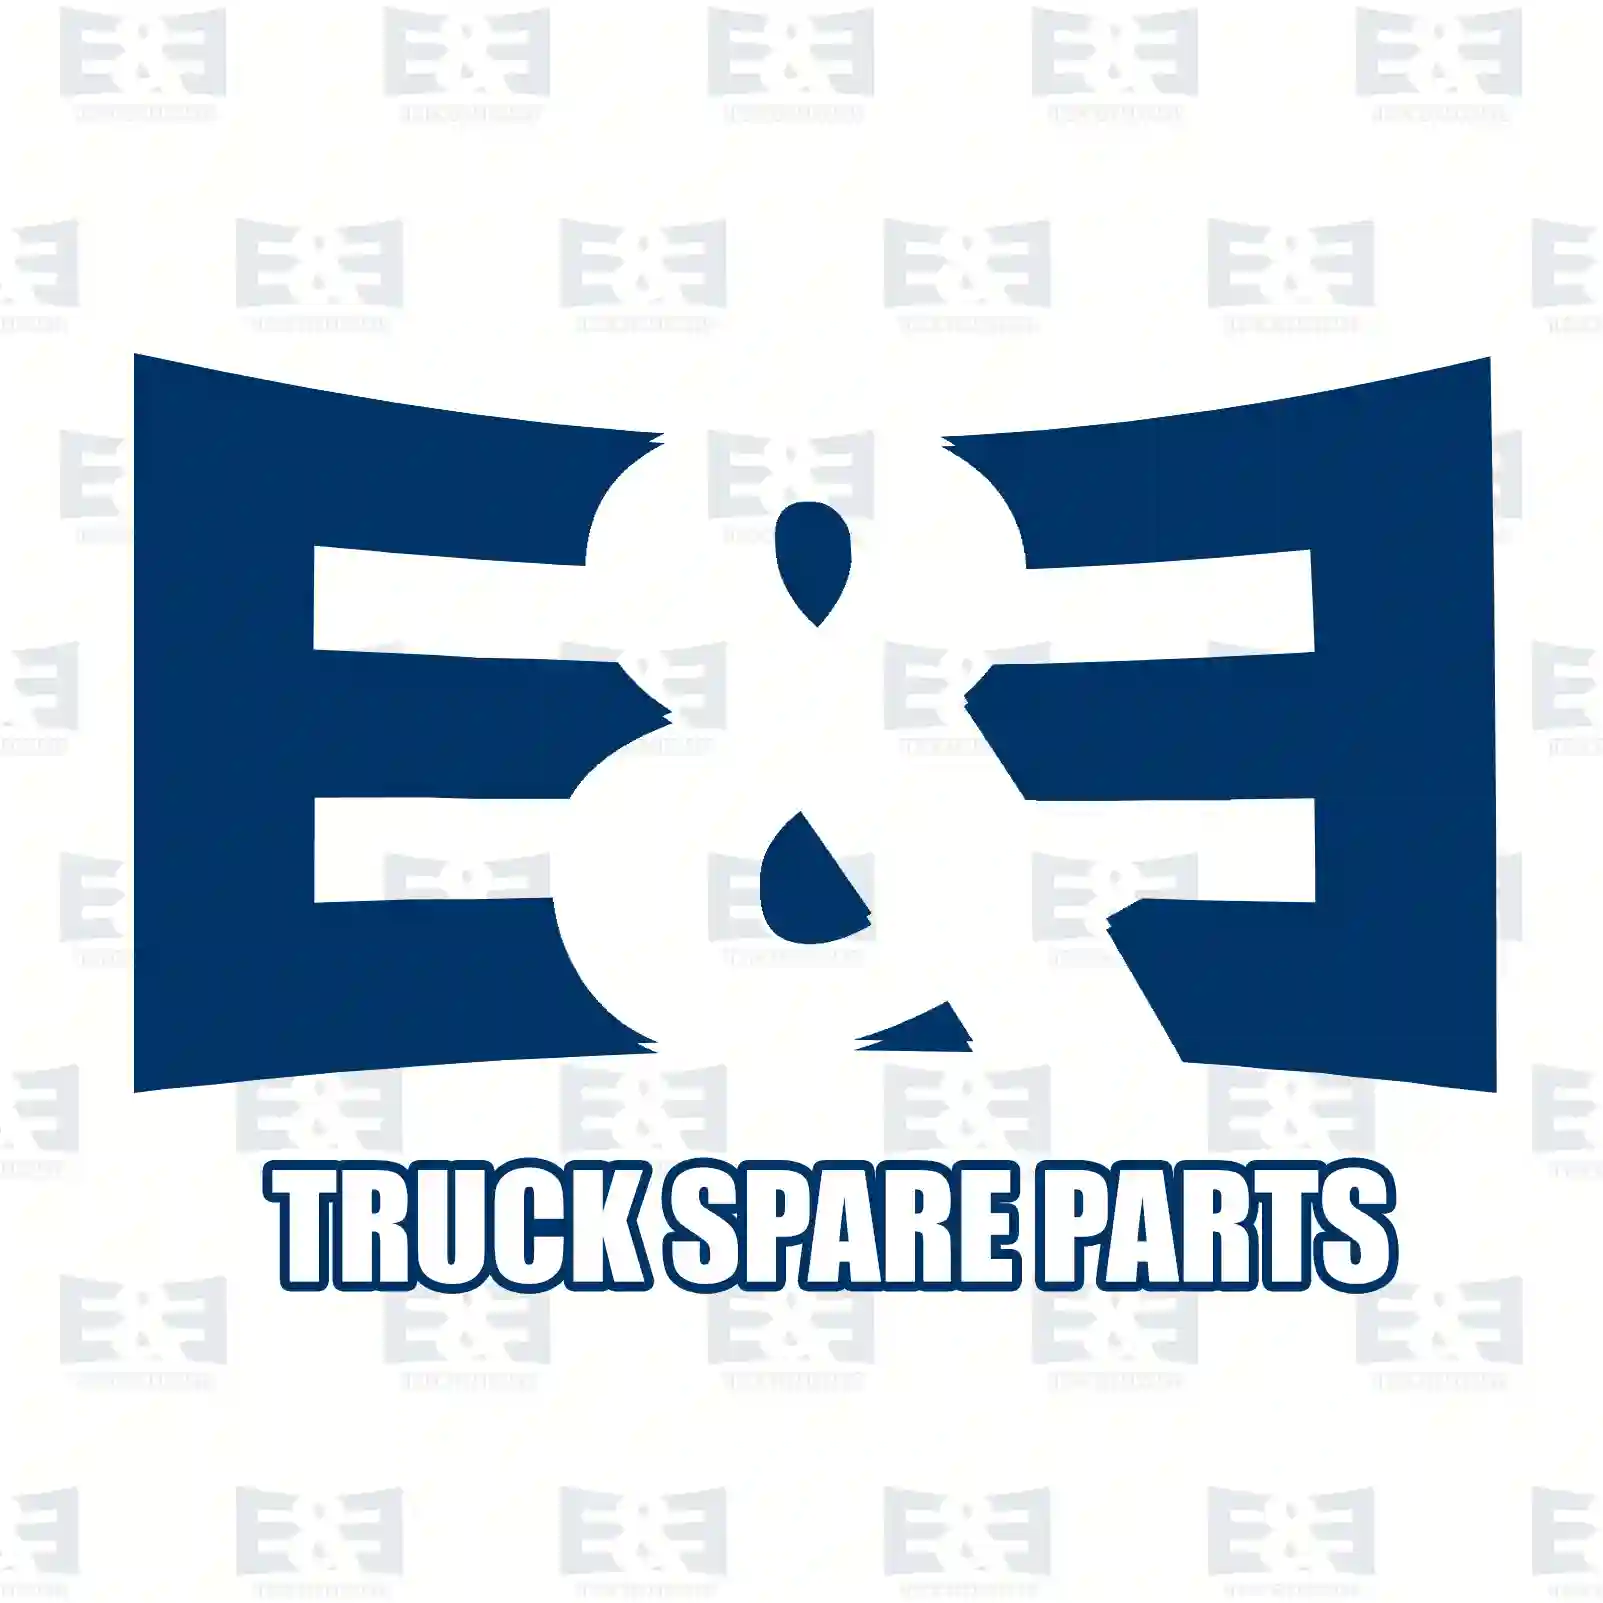 Brake disc, 2E2296283, 2E0615301, 68006716AA, 68006716AA, 9064210012, 9064210112, 9064210212, 2E0615301, 2E0615301, 2E0615301, ZG50210-0008 ||  2E2296283 E&E Truck Spare Parts | Truck Spare Parts, Auotomotive Spare Parts Brake disc, 2E2296283, 2E0615301, 68006716AA, 68006716AA, 9064210012, 9064210112, 9064210212, 2E0615301, 2E0615301, 2E0615301, ZG50210-0008 ||  2E2296283 E&E Truck Spare Parts | Truck Spare Parts, Auotomotive Spare Parts